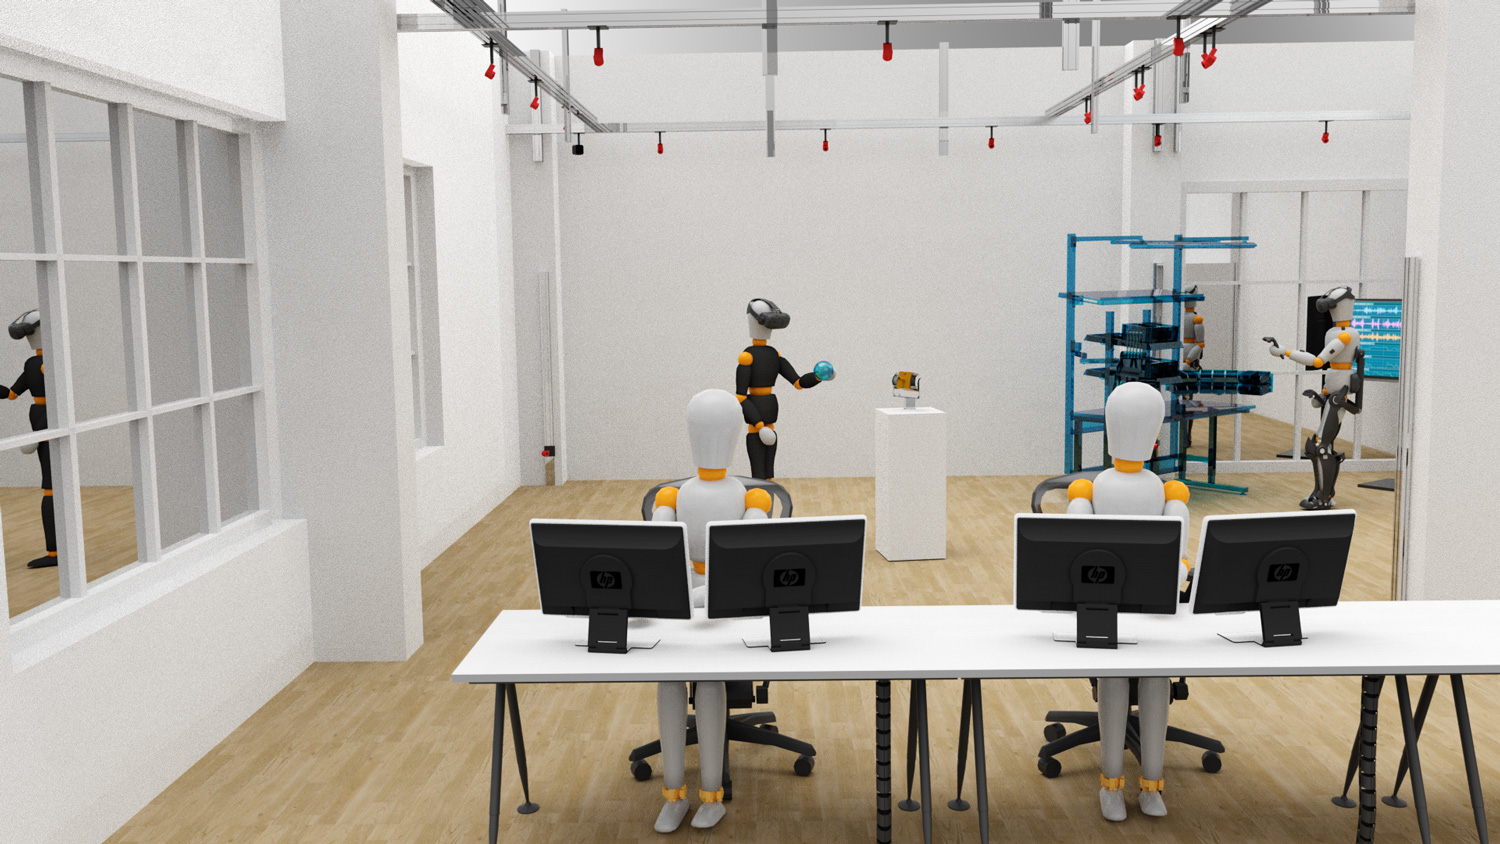 Virtuelles Modell mit mehreren menschenähnlichen Robotern in einem Raum arbeitend.